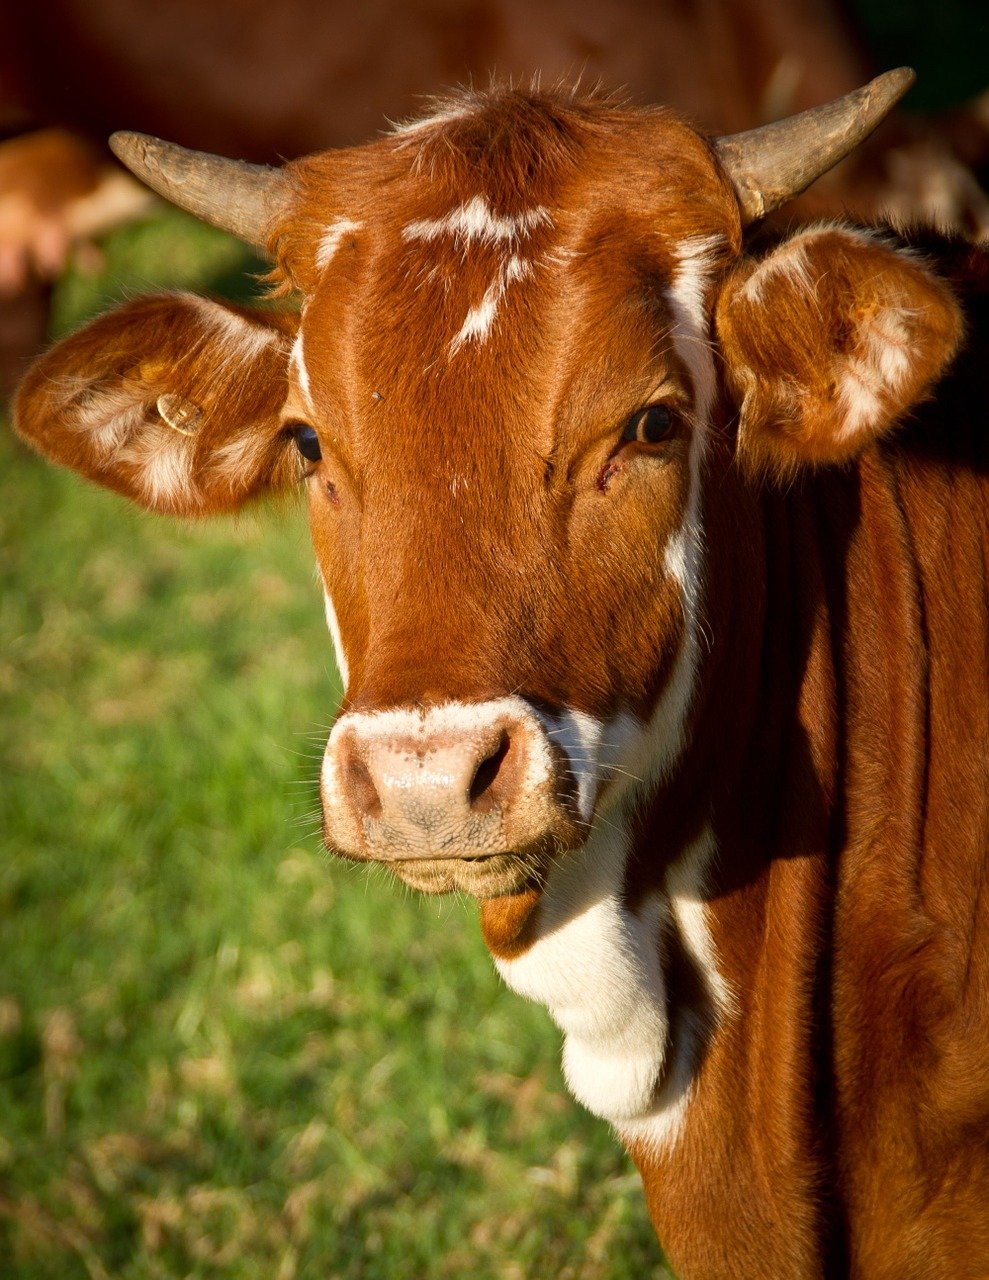 Коровы мясных пород живым весом на убой. 110 руб/кг.